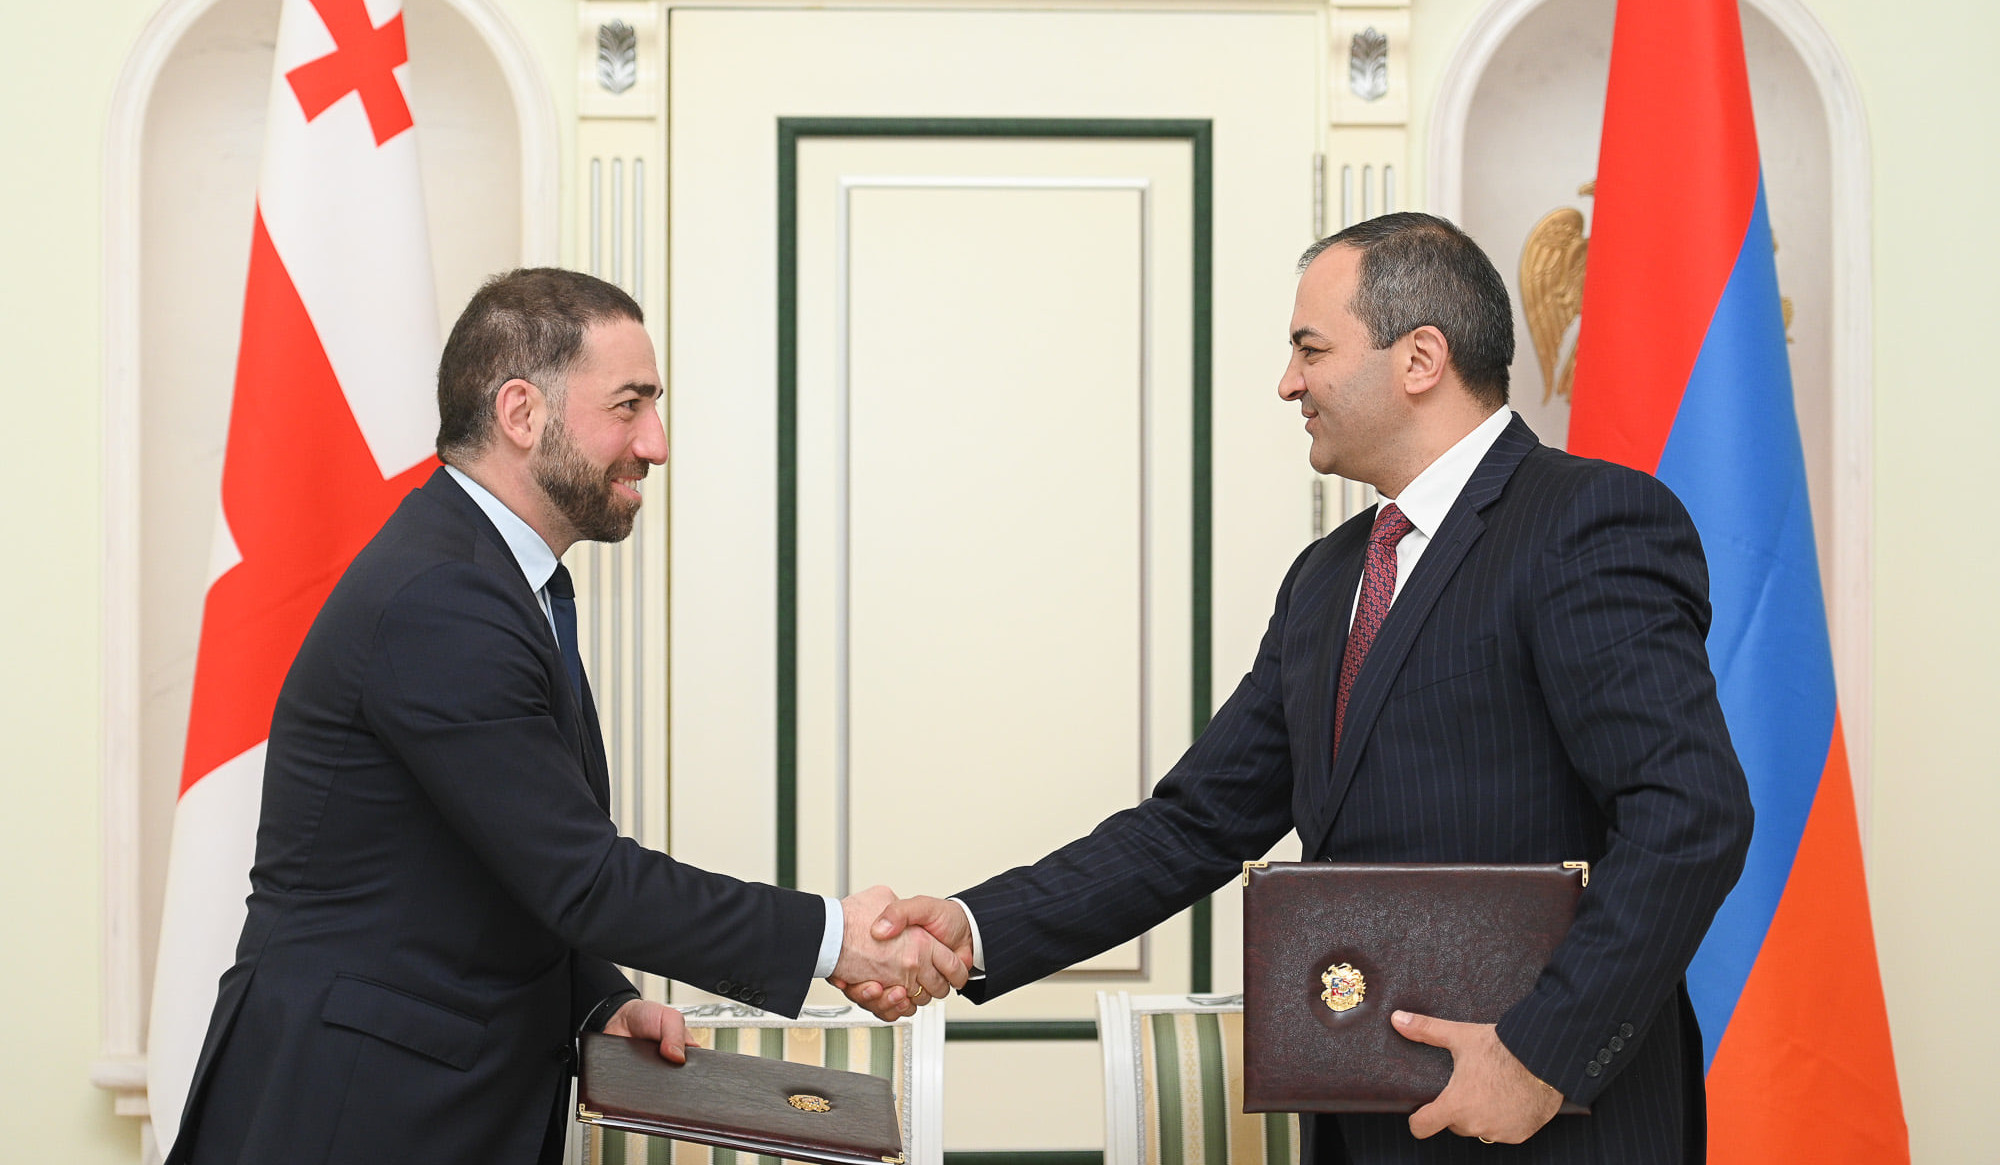 Հայաստան է ժամանել Վրաստանի գլխավոր դատախազը. ստորագրվել է համագործակցության հուշագիր